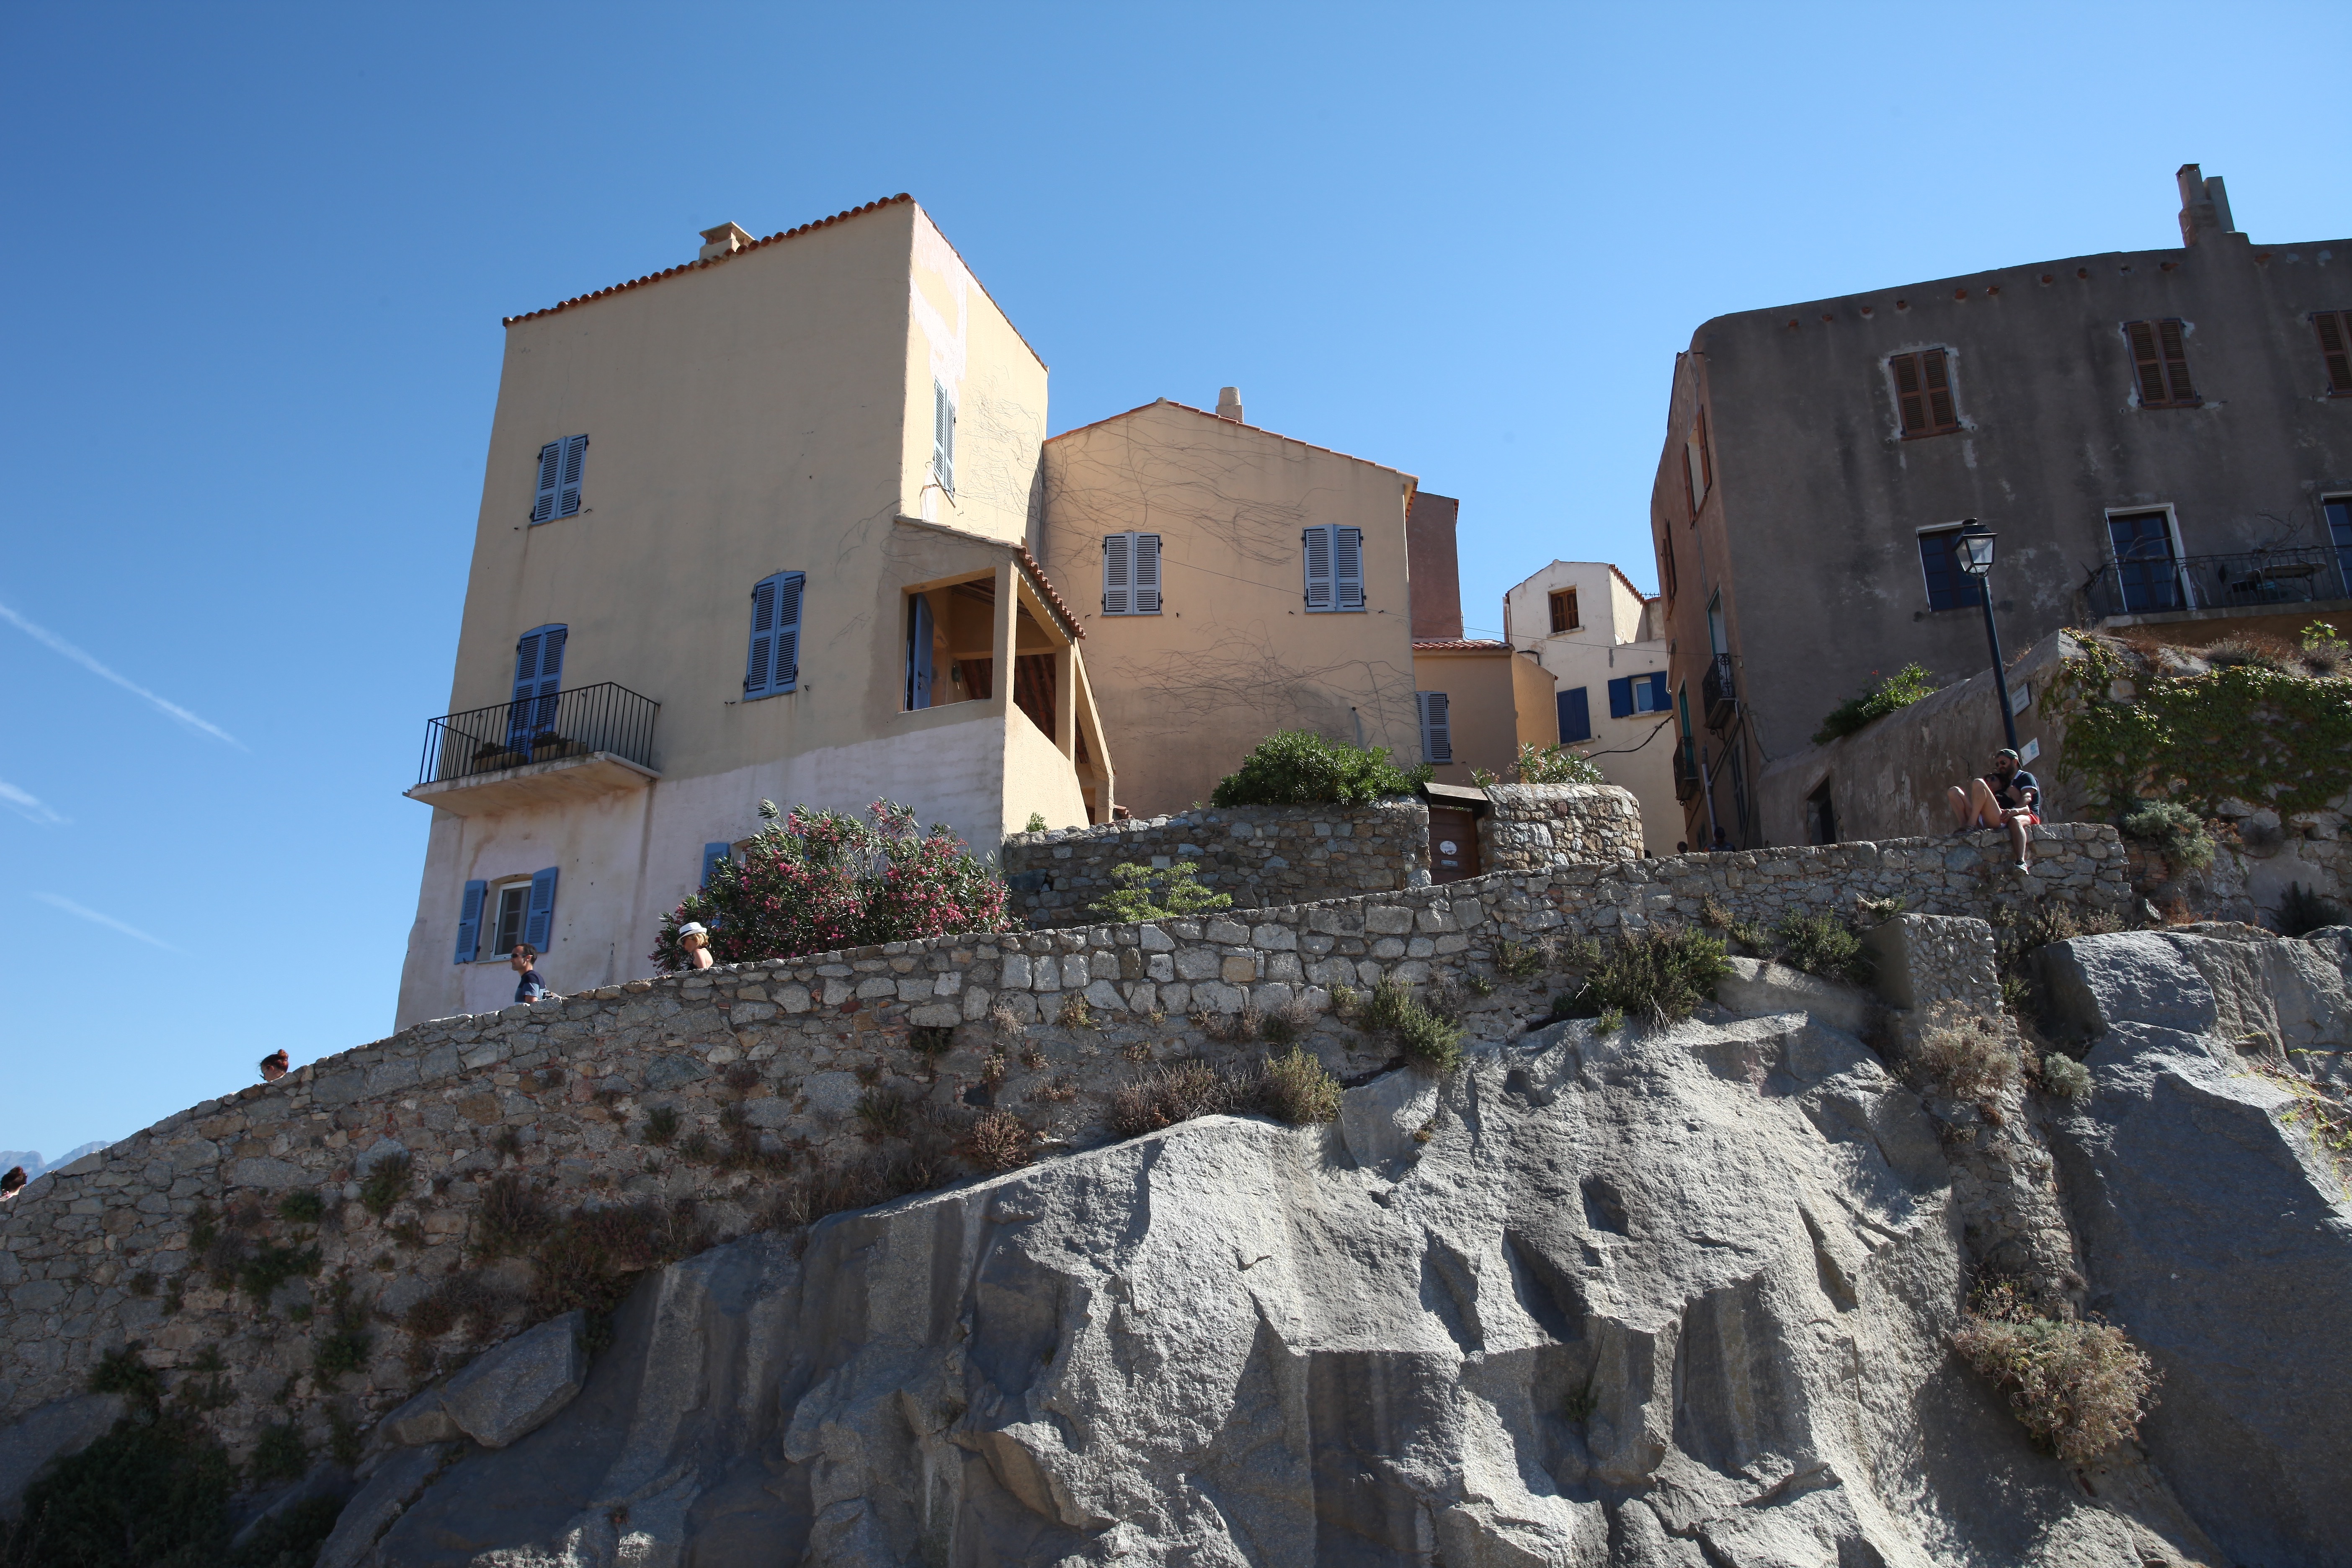 Les remparts et les maisons de la Citadelle semblent avoir été taillées dans la masse du rocher.